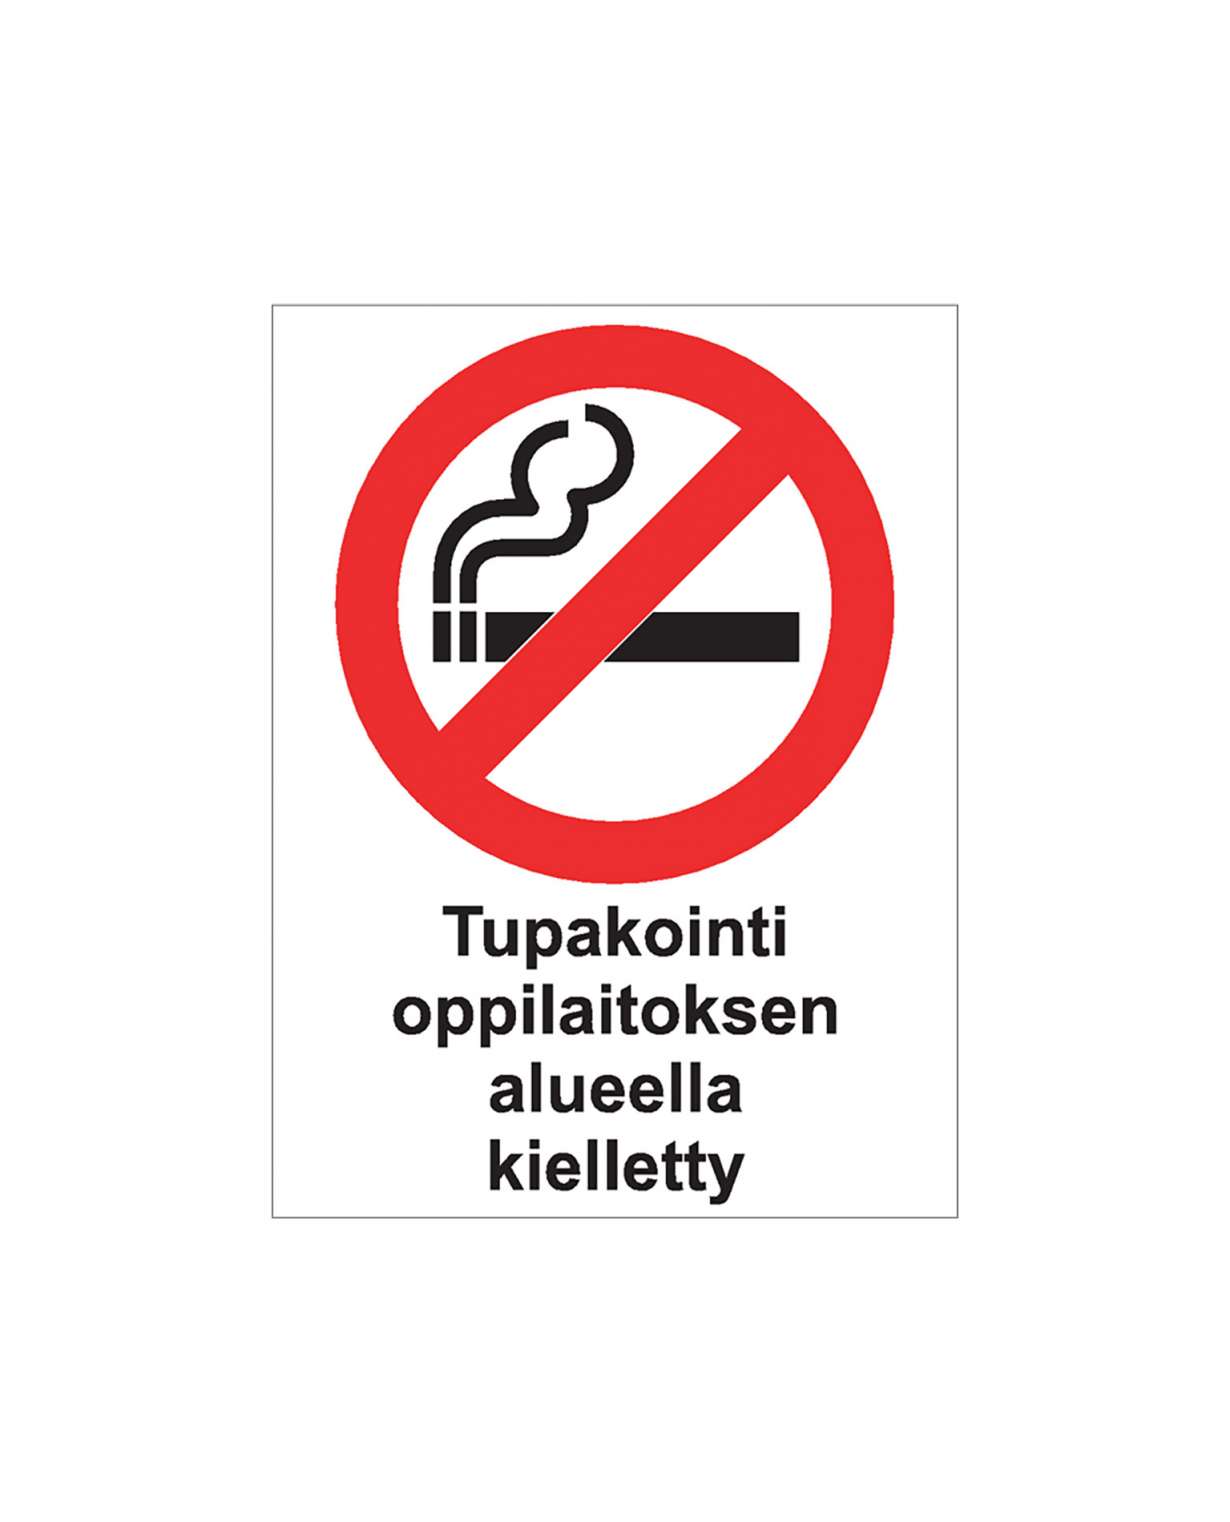 Tupakointi oppilaitoksen alueella kielletty, Magneetti, 200x300 mm